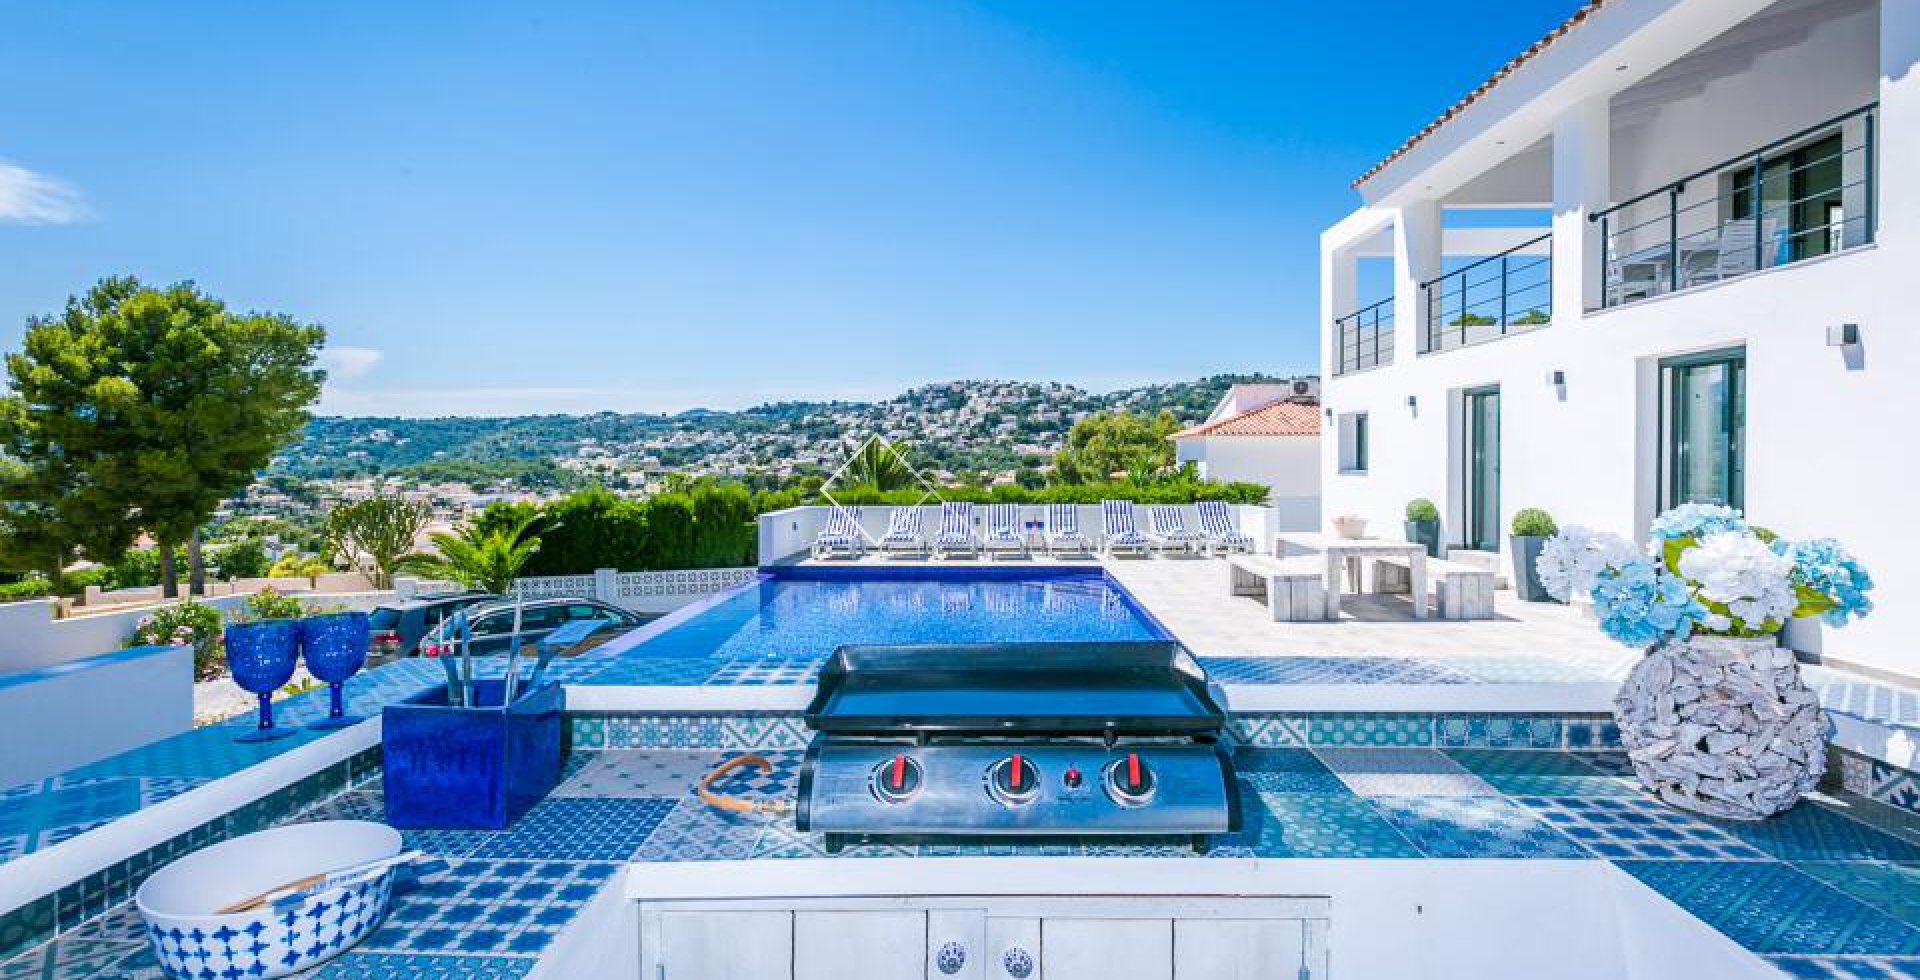 Sommerküche Pool Barbecue - Beeindruckende moderne Villa in San Jaime Moraira zu verkaufen